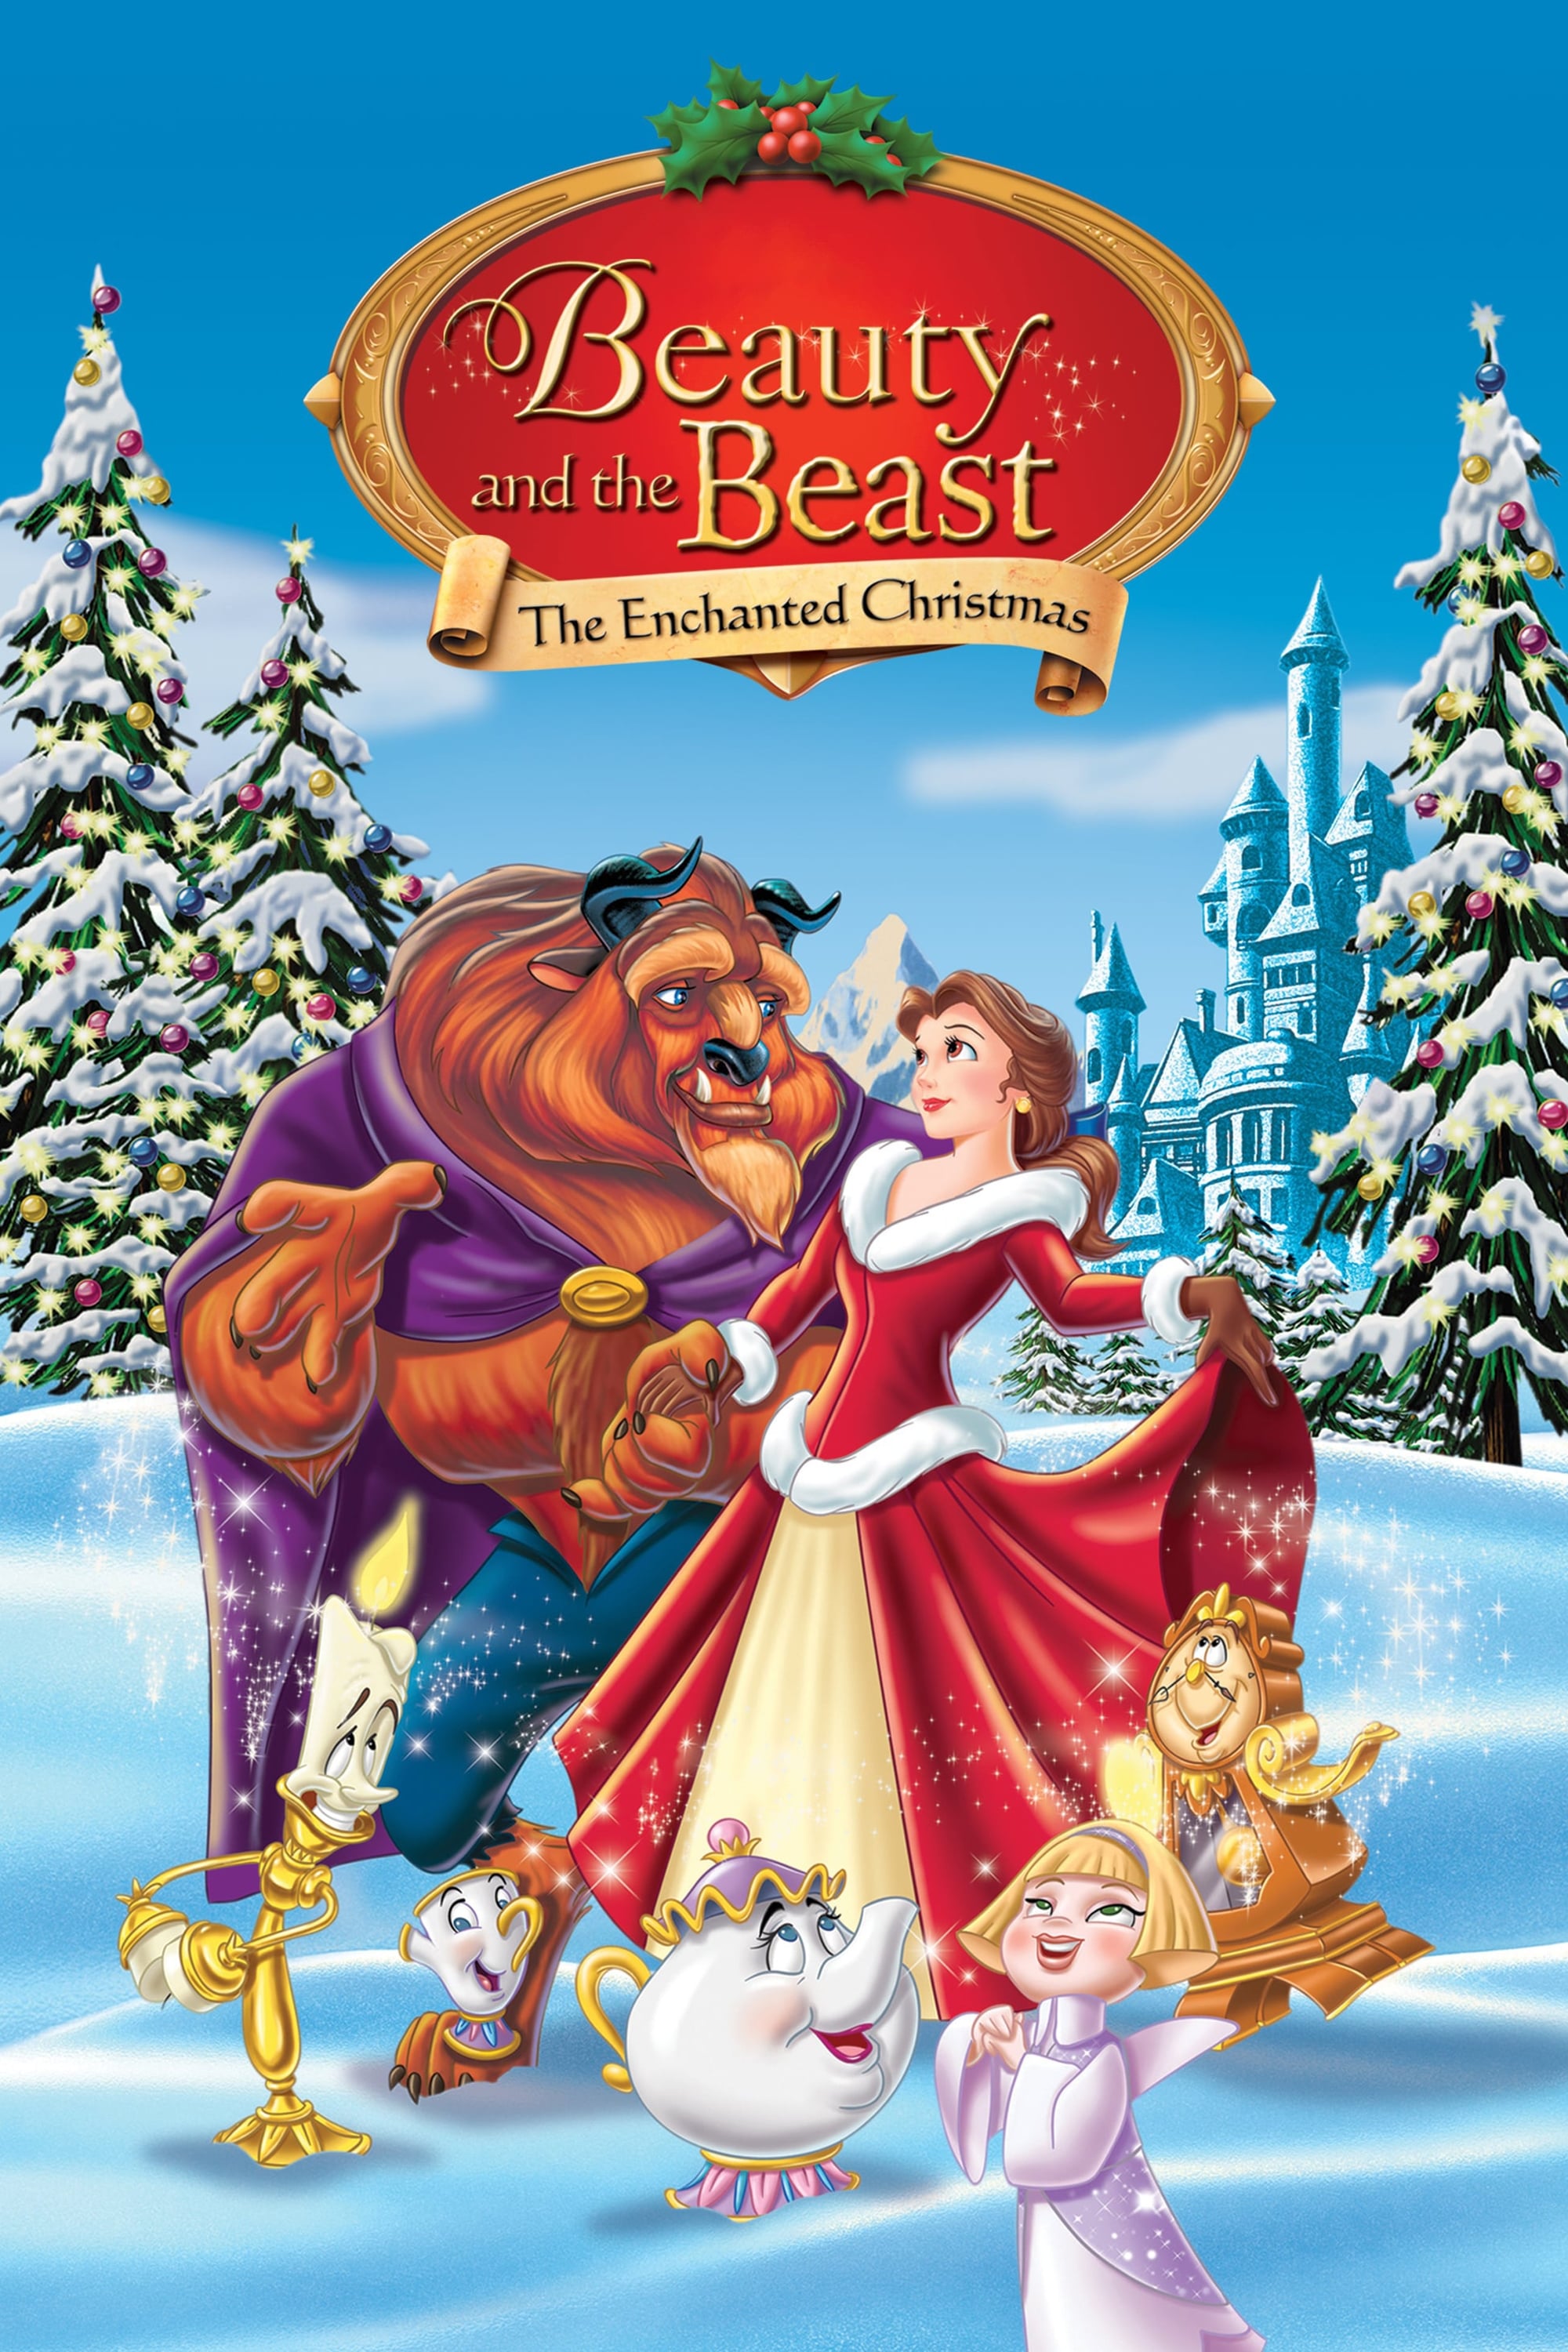 La Bella y la Bestia 2: Una Navidad Encantada